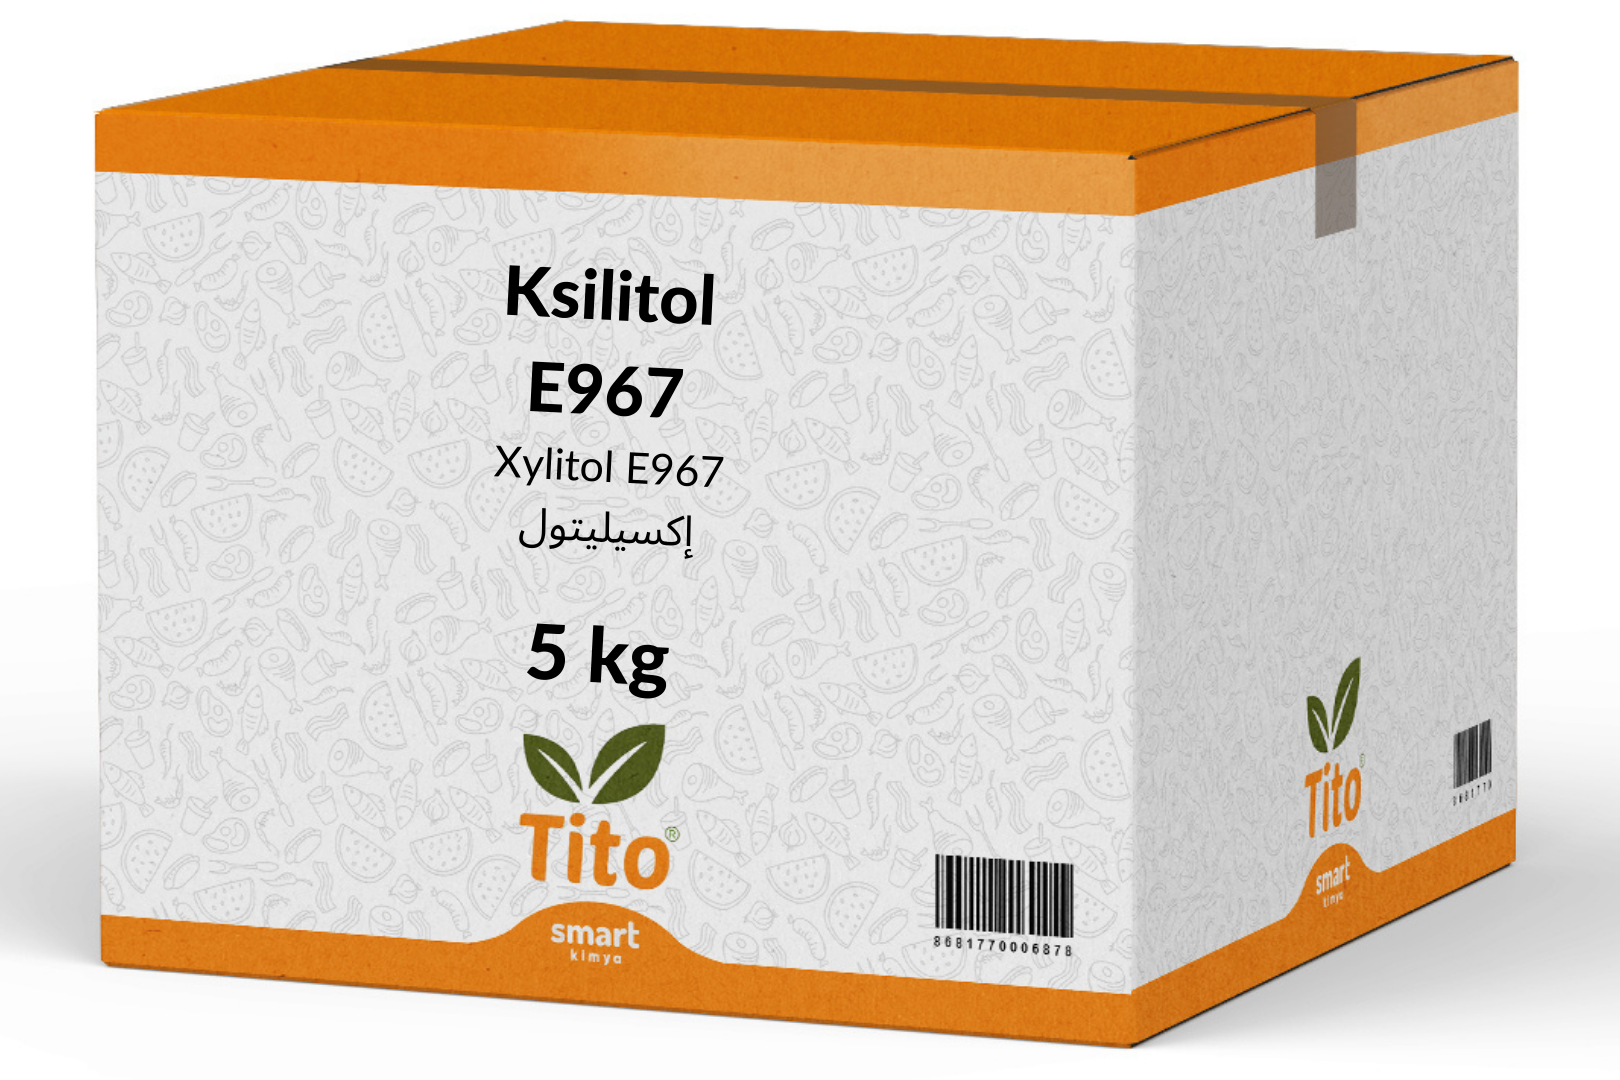 Ksilitol E967 5 kg